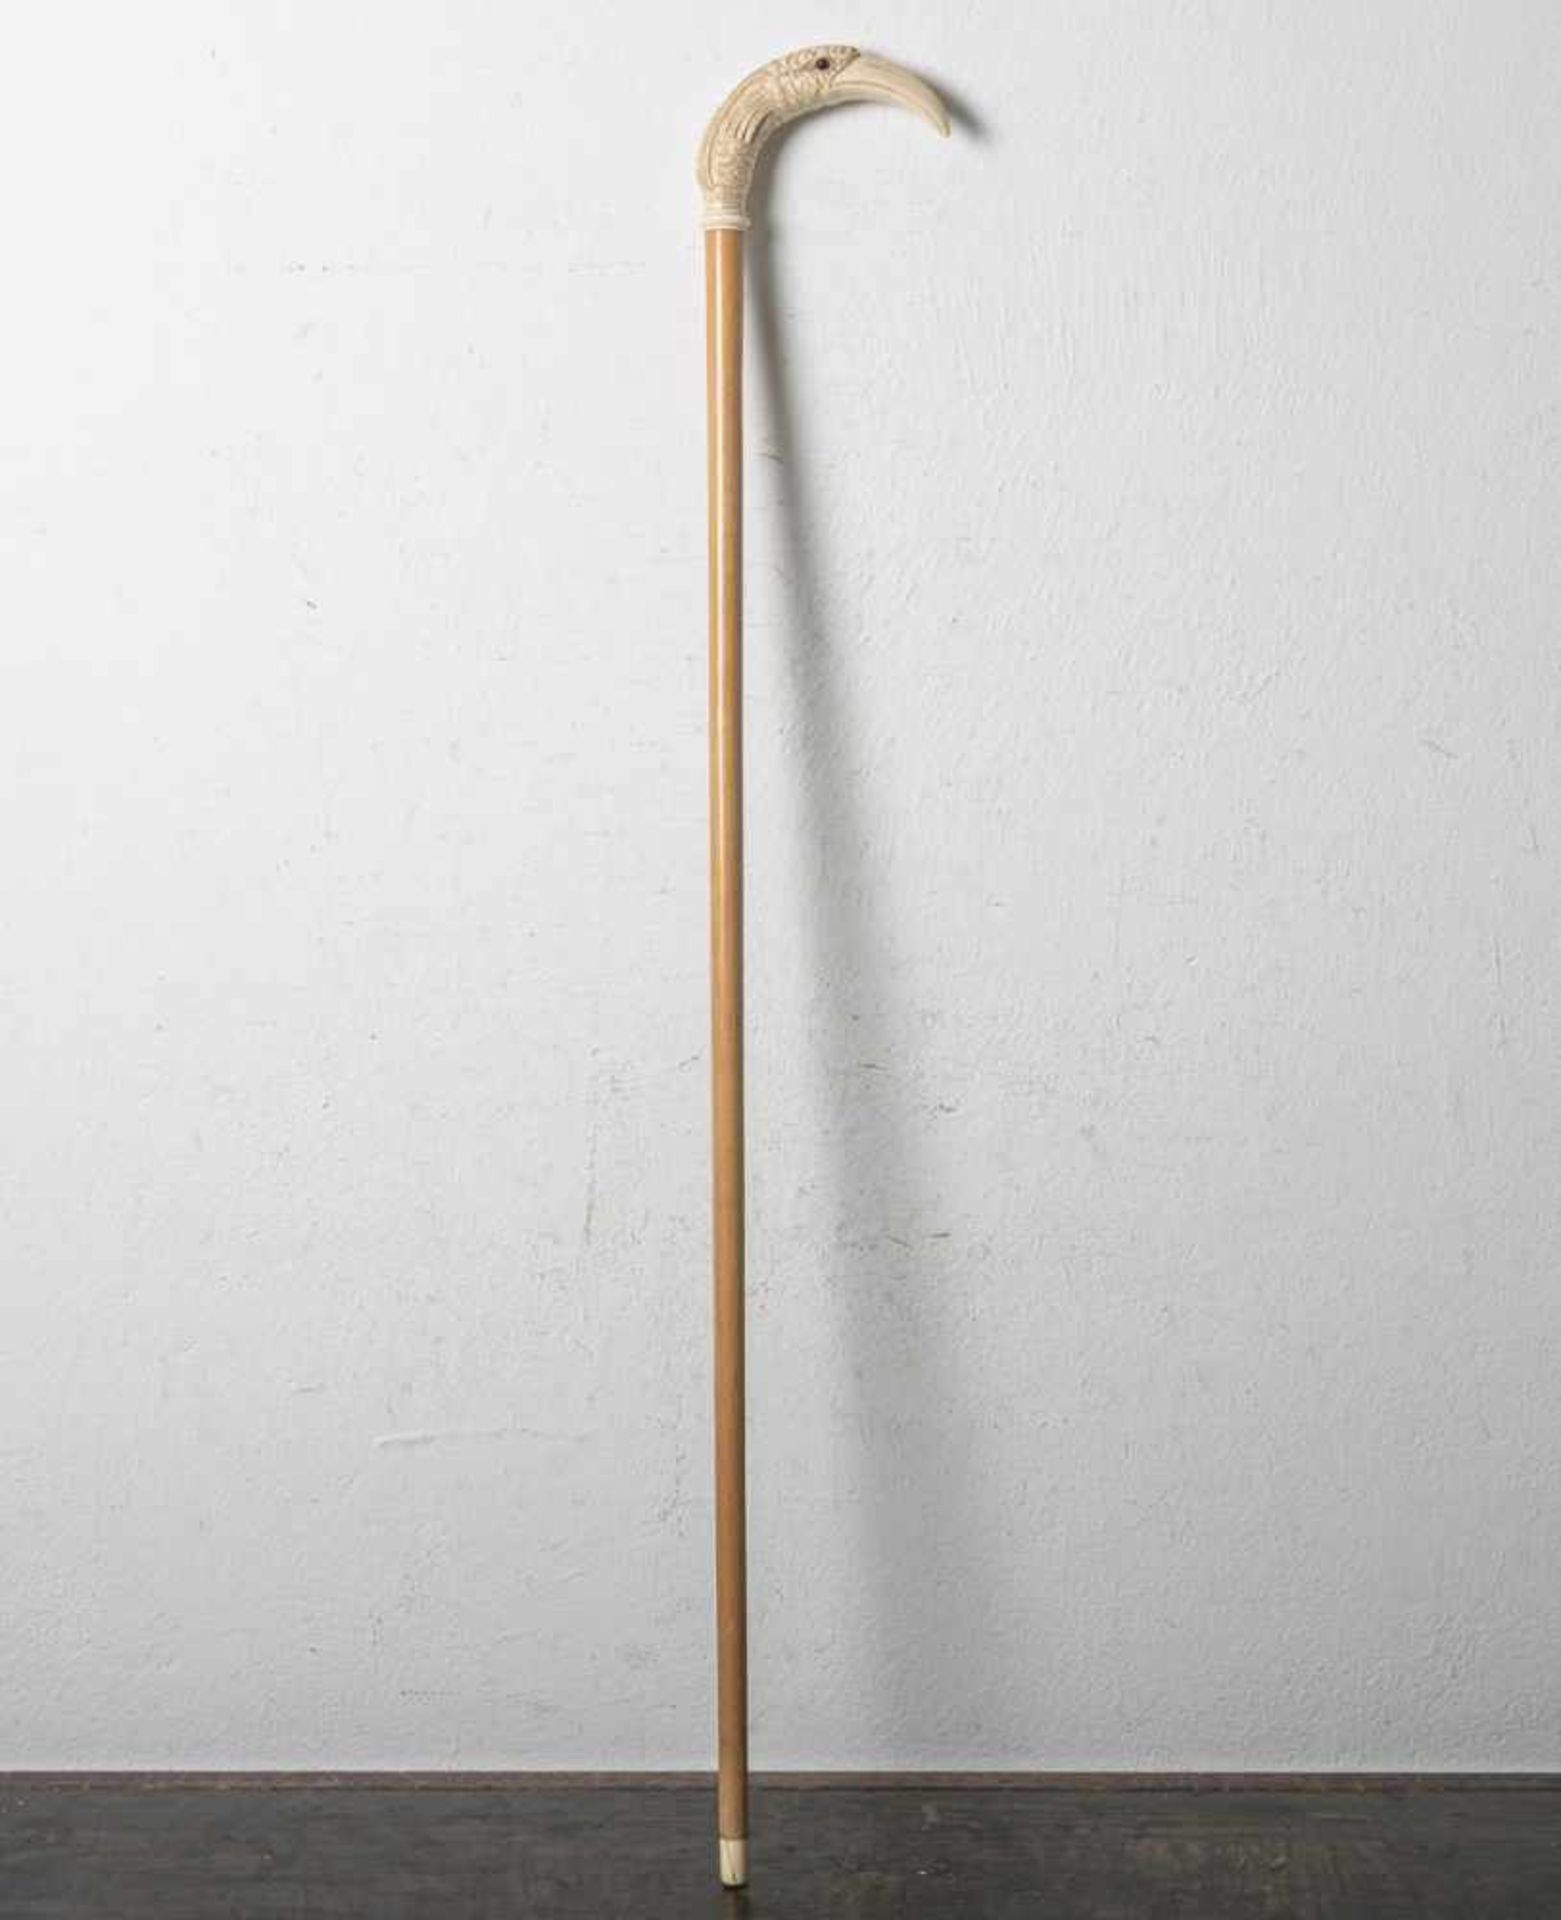 Eleganter Spazierstock (wohl um 1900/20), Hartholz, Griff aus Elfenbein in Form einesVogelkopfes